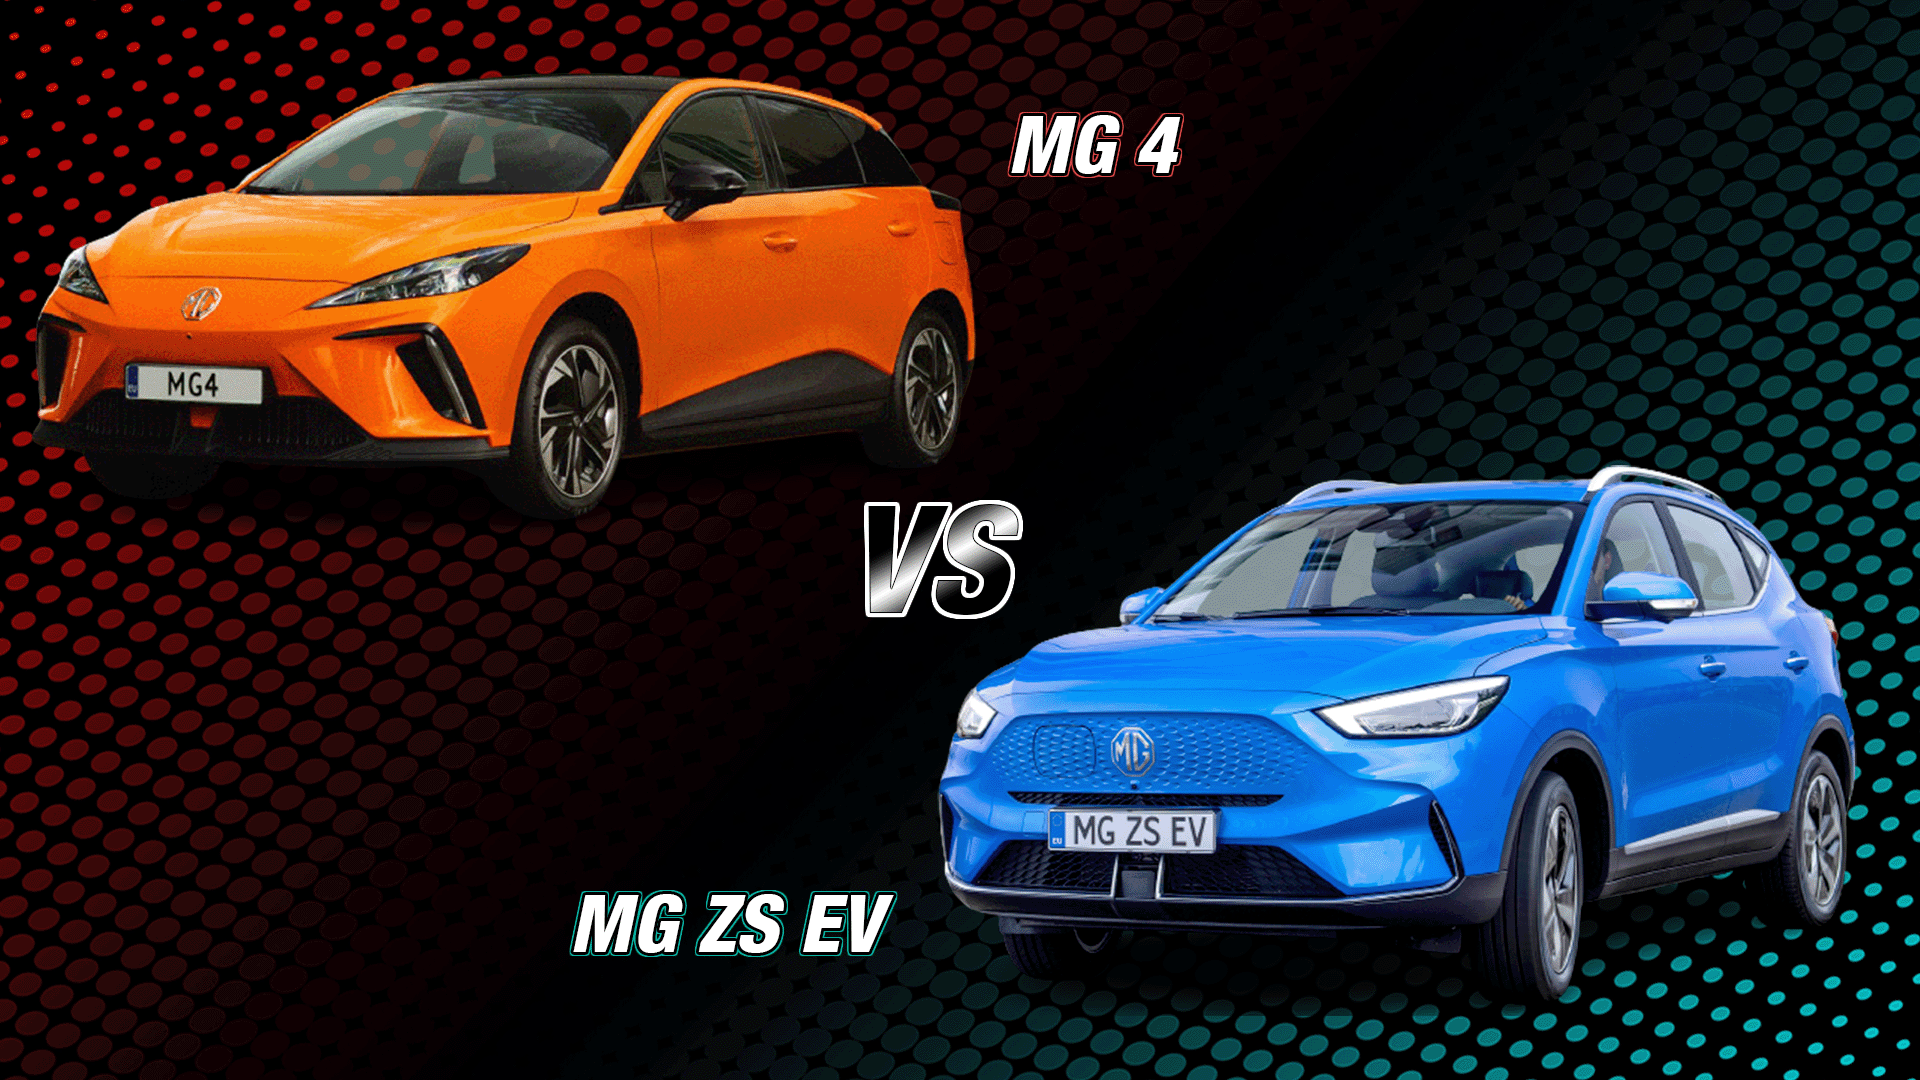 MG 4 vs MG ZS EV angle